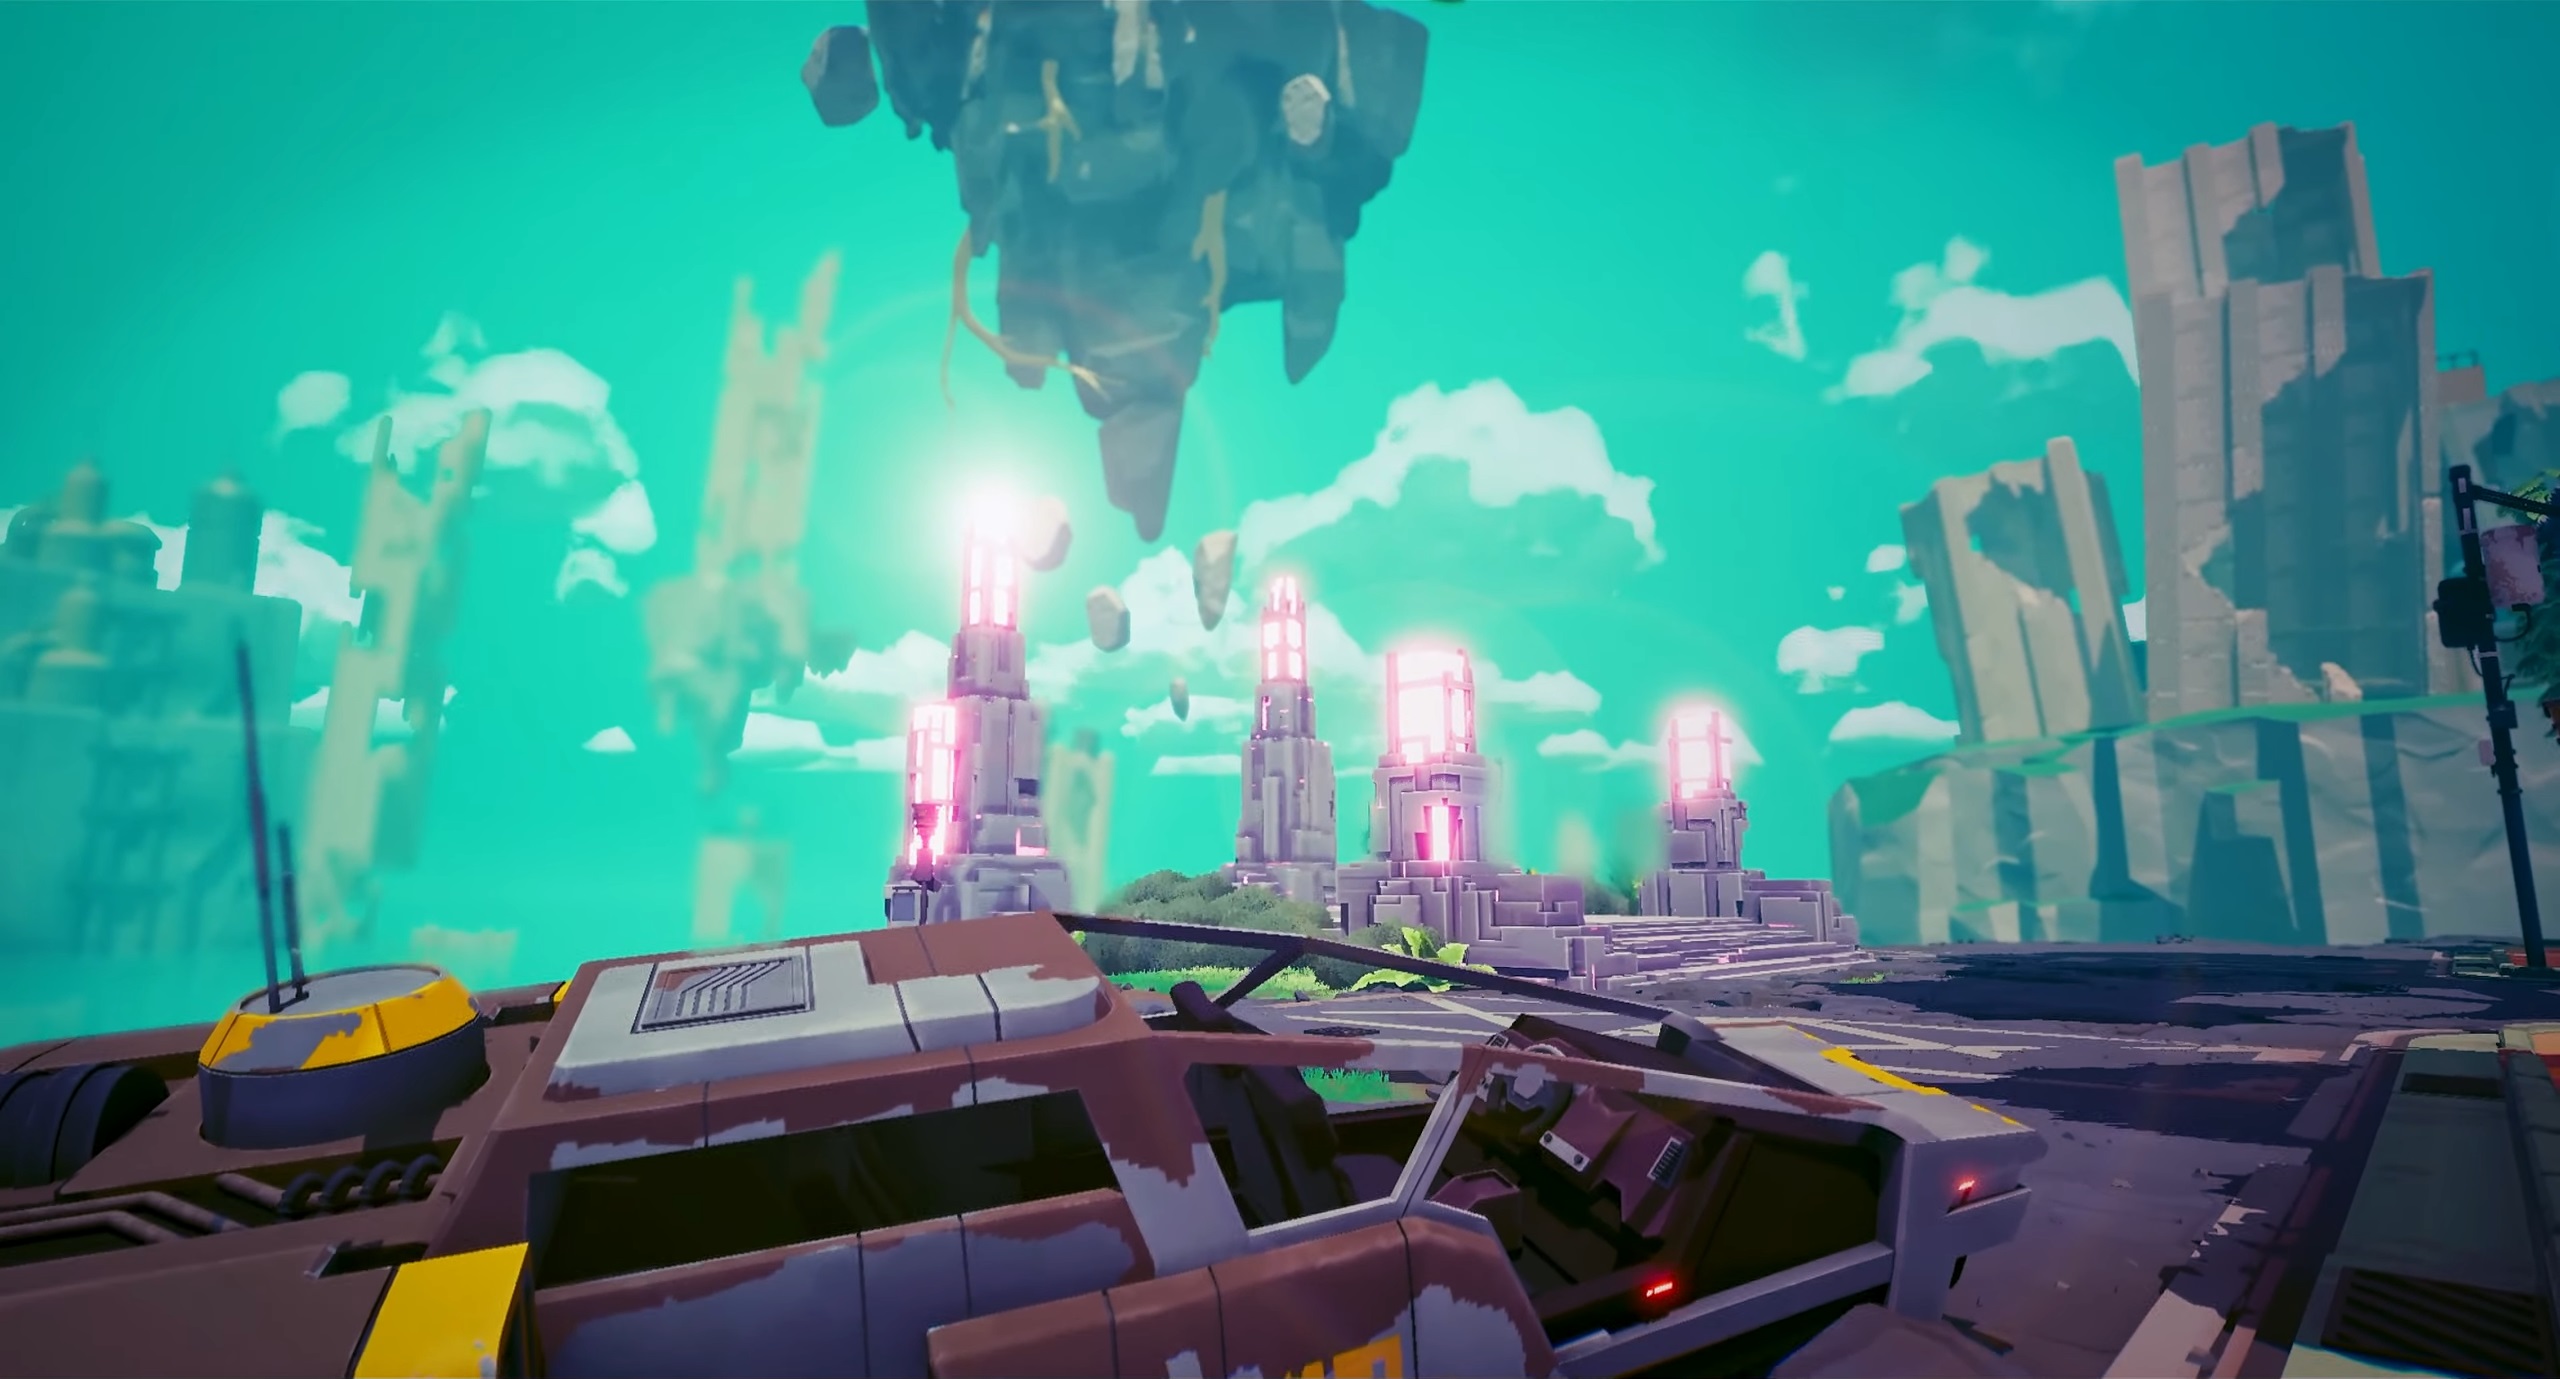 Floating cyberpunk city among teal skies in Hyper Light Breaker